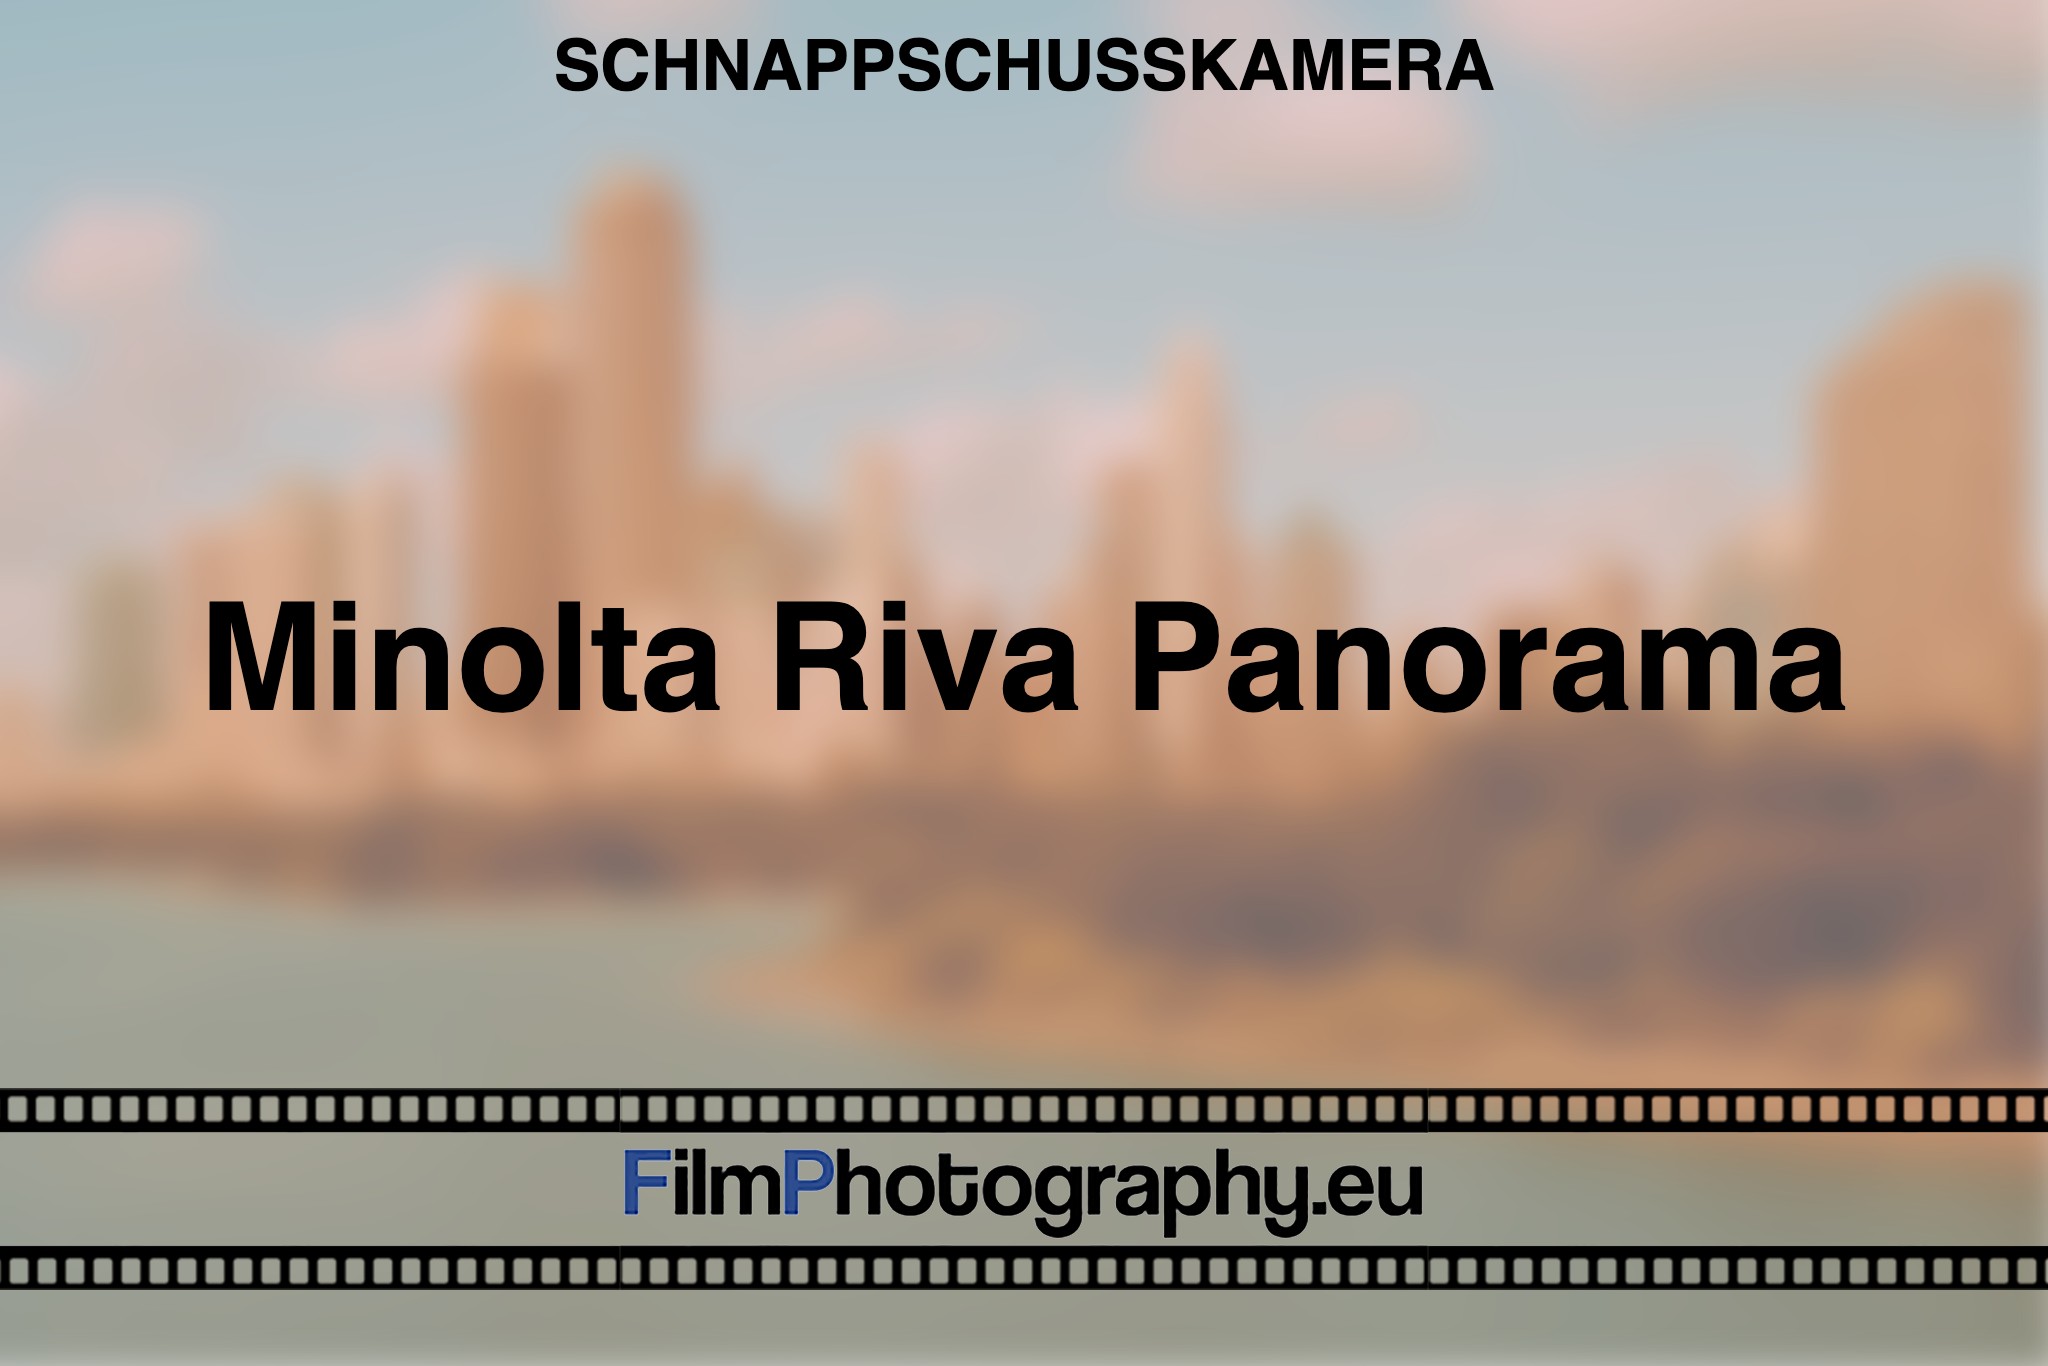 minolta-riva-panorama-schnappschusskamera-bnv